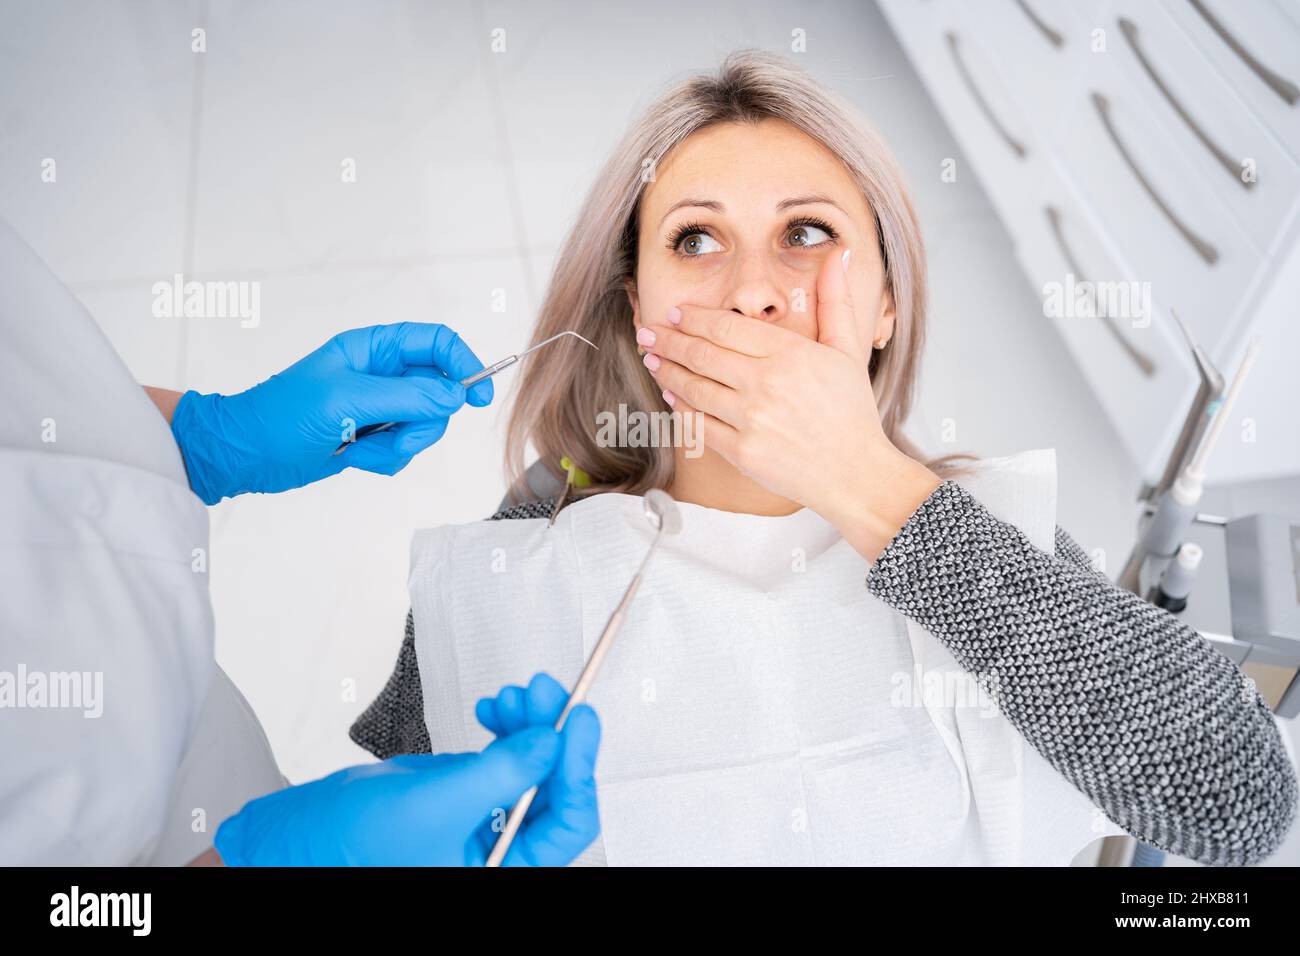 Il concetto di medicina e salute dentale, odontoiatria moderna, trattamento carie in clinica, una donna seduta in una sedia dentale, paura di un dentista Foto Stock